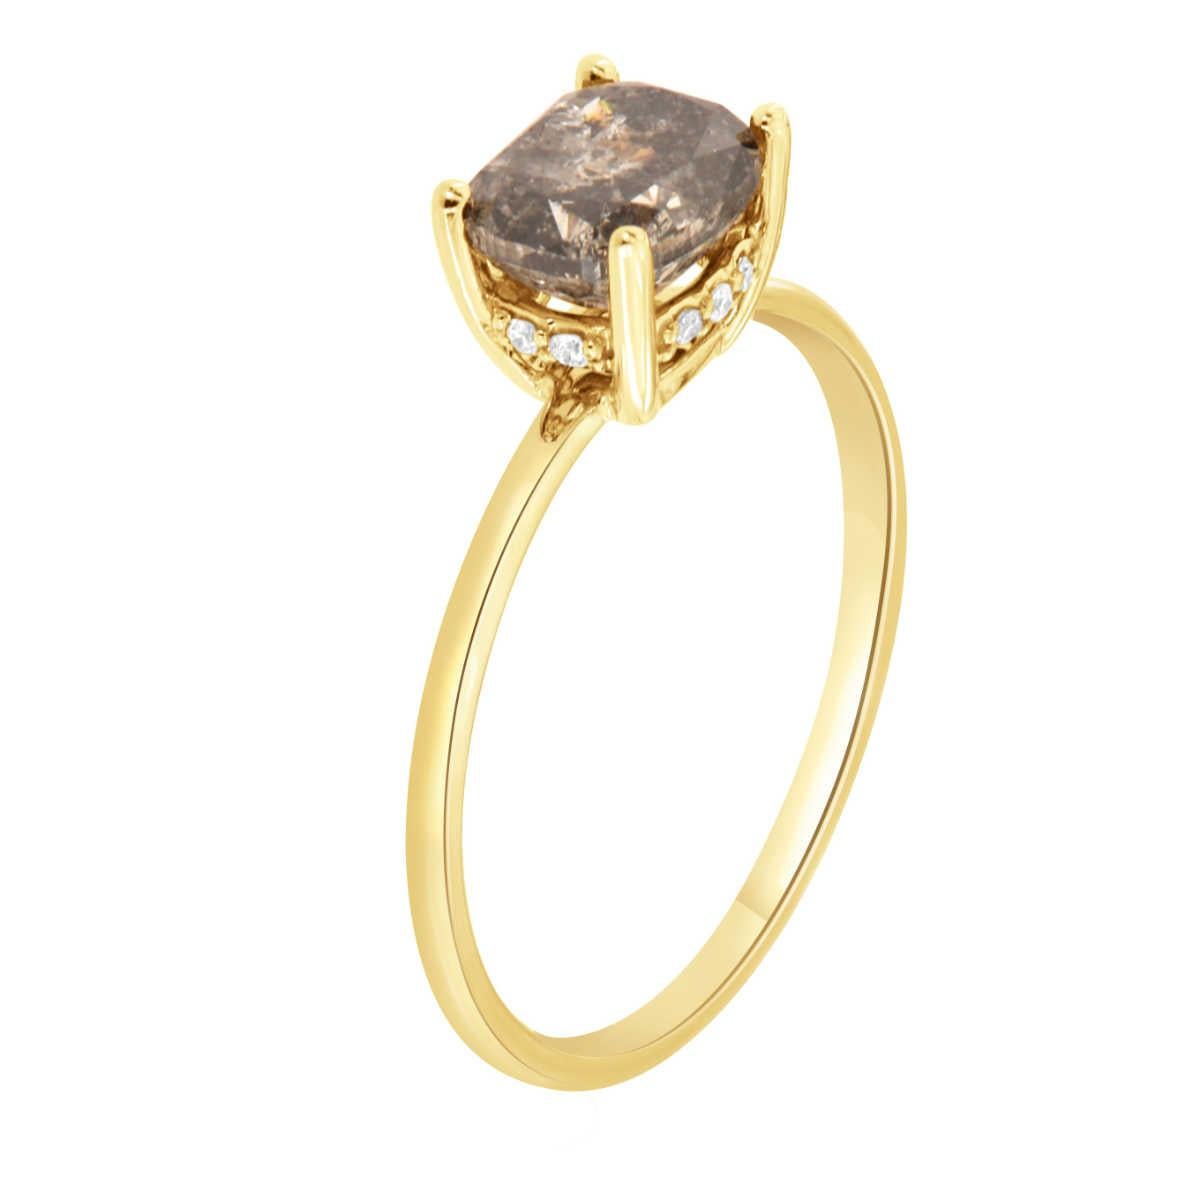 Diese 14k Gelbgold organischen & rustikalen Stil Ring enthält eine versteckte Halo mit etwa zehn (10) Runde Diamanten mit einem Gesamtgewicht von 0,04 Karat. In der Mitte dieses zierlichen erdigen Stils ist der Ring in Ost-West-Richtung in vier (4)